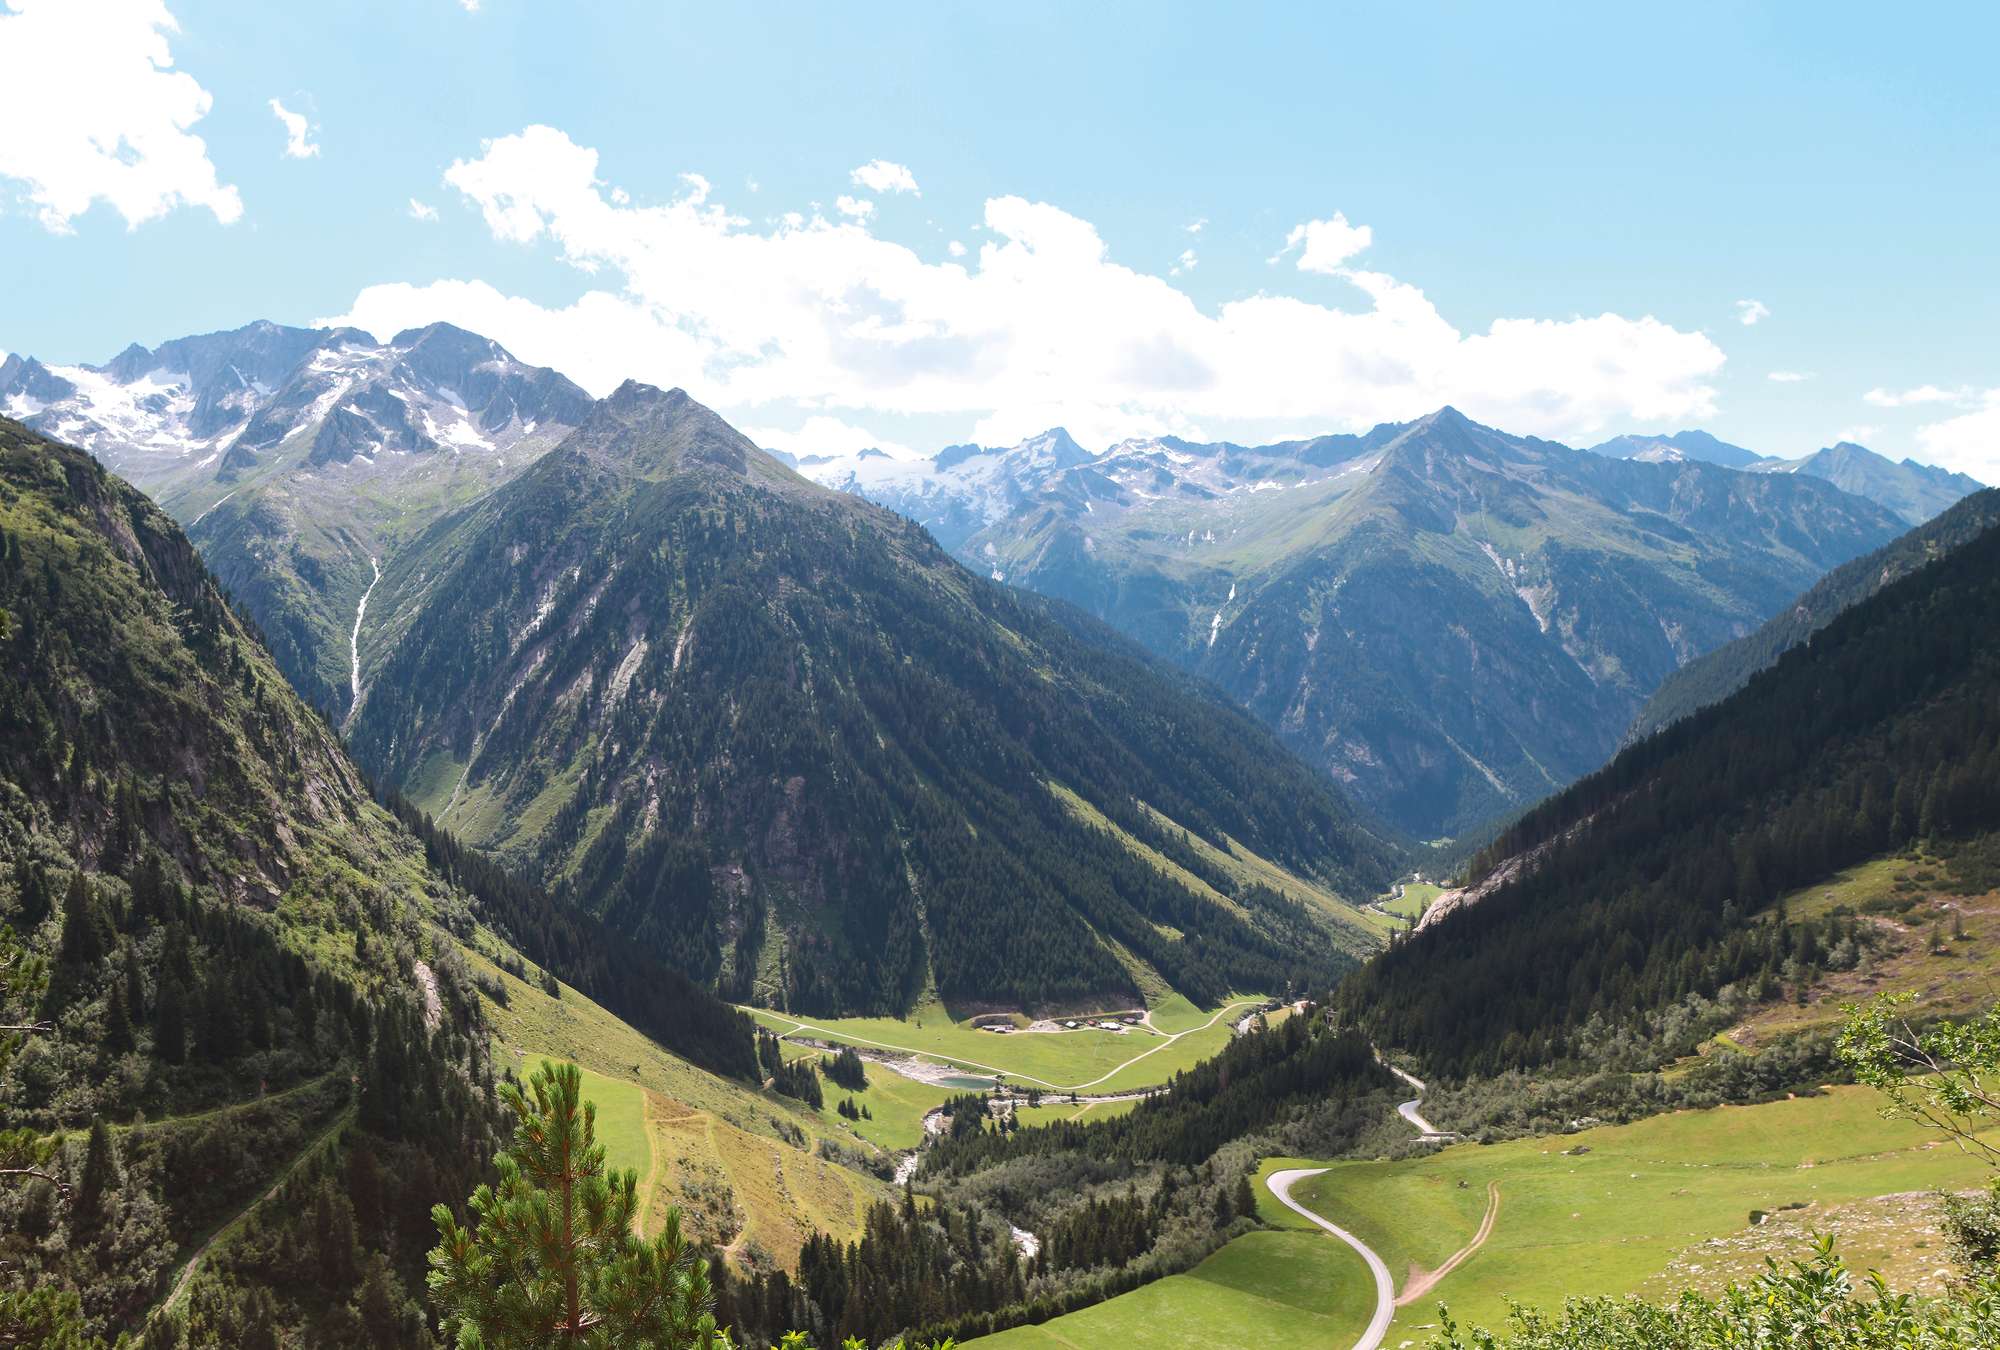             Papier peint panoramique avec les Alpes - vue sur la vallée en Autriche
        